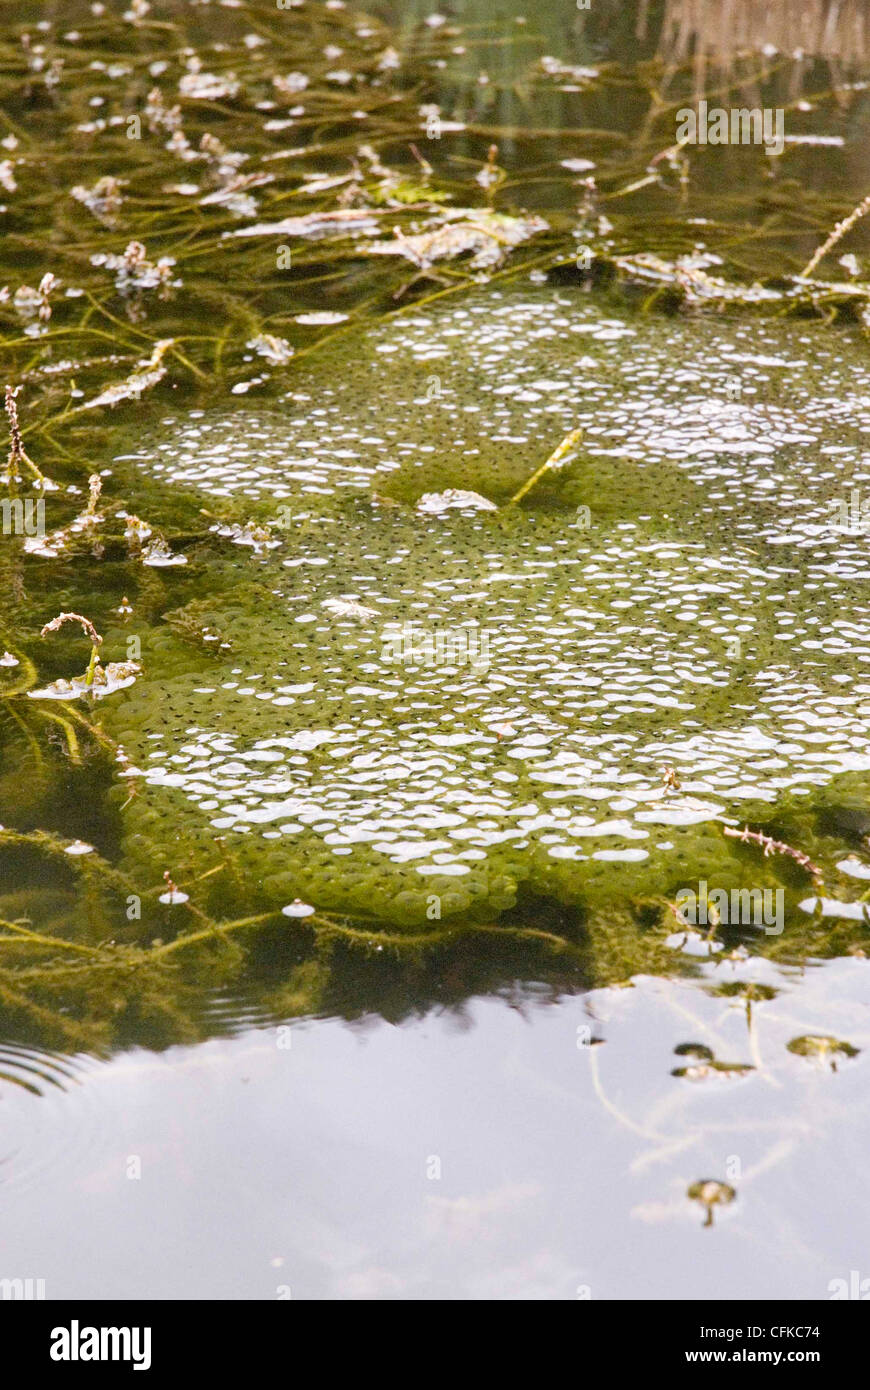 Frosch-Laich im Teich Stockfotografie - Alamy